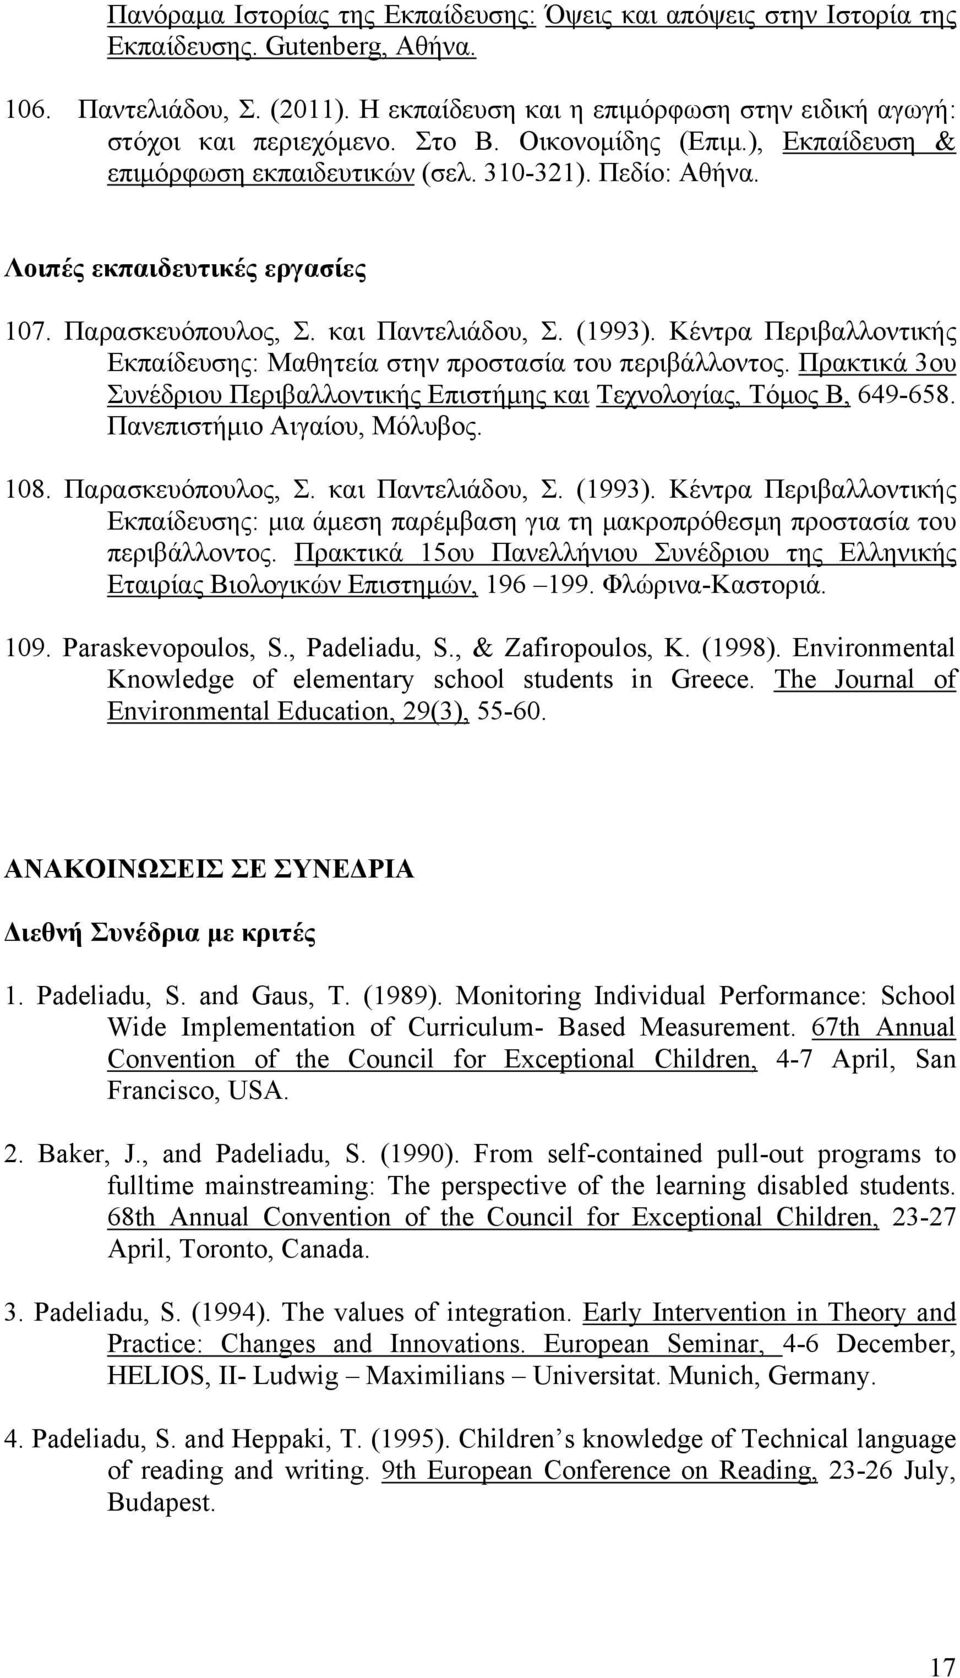 Λοιπές εκπαιδευτικές εργασίες 107. Παρασκευόπουλος, Σ. και Παντελιάδου, Σ. (1993). Κέντρα Περιβαλλοντικής Εκπαίδευσης: Μαθητεία στην προστασία του περιβάλλοντος.